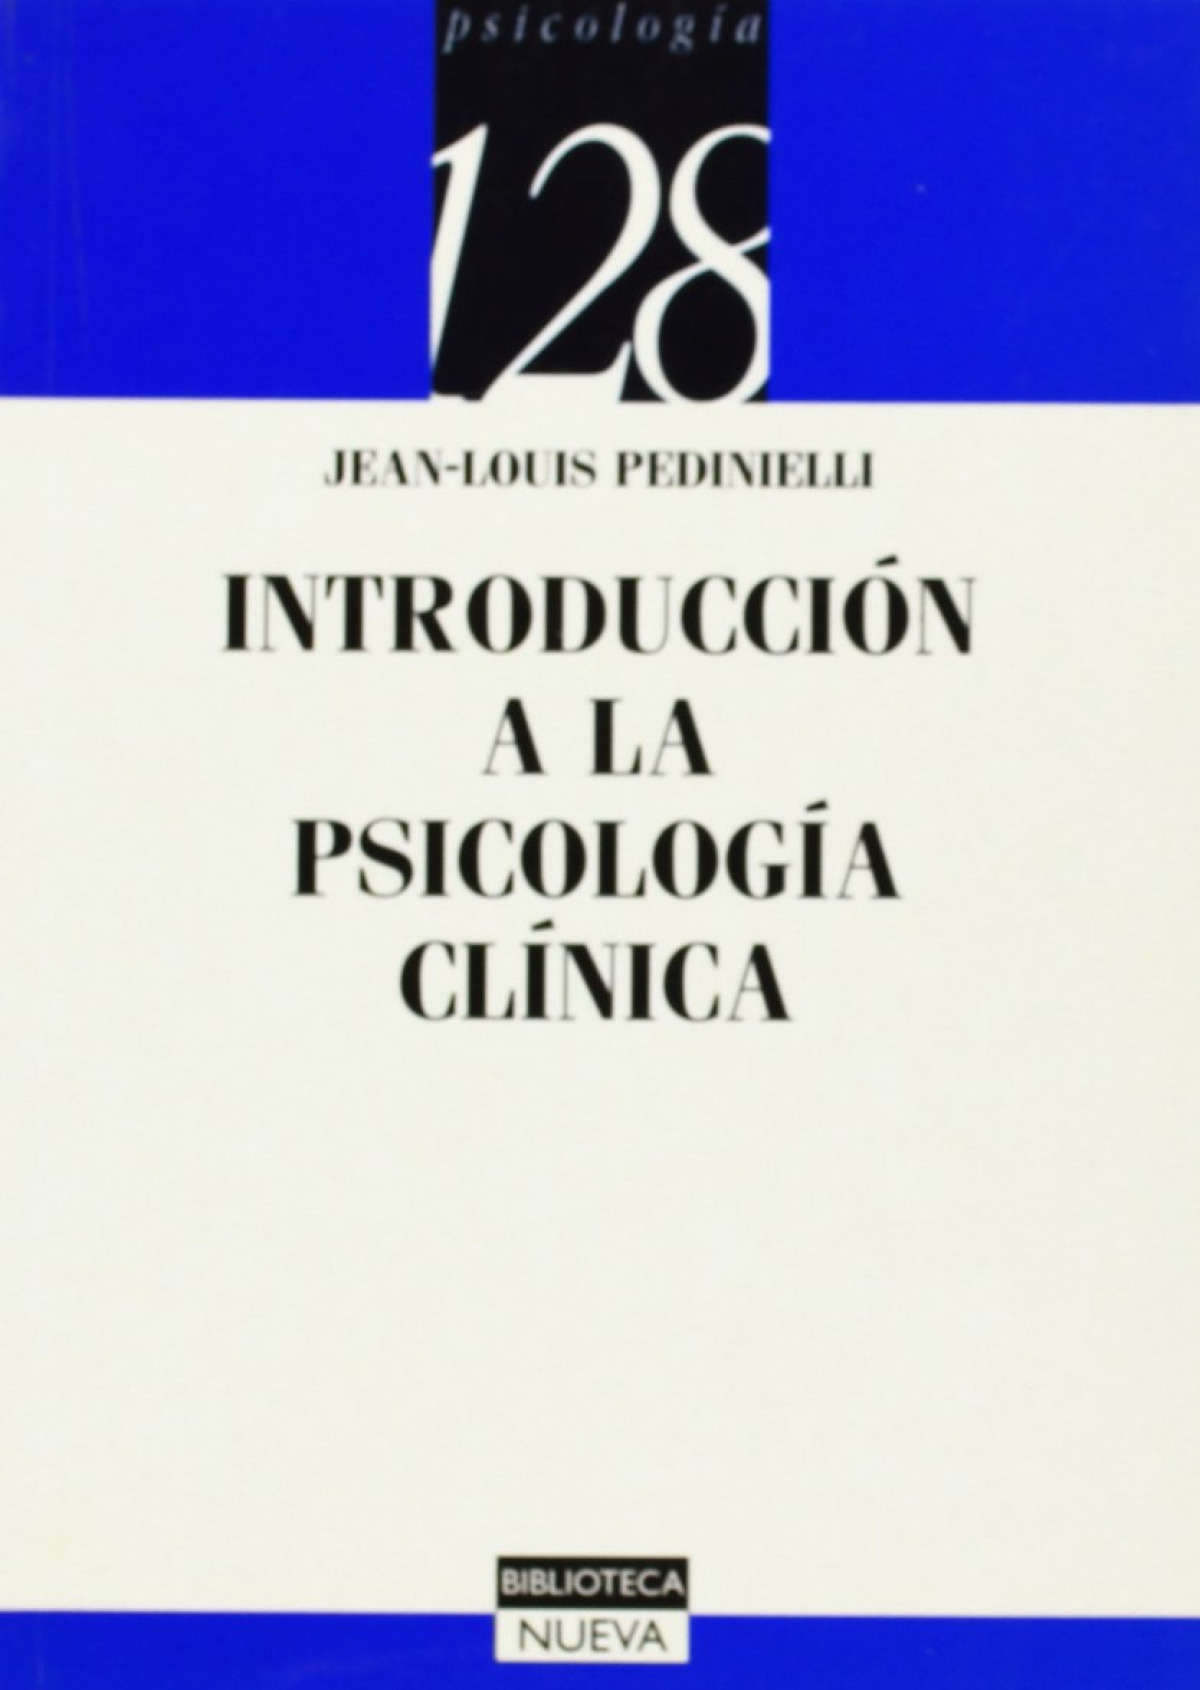 Introduccion a la psicologia clinica - Pedinielli, J,L,